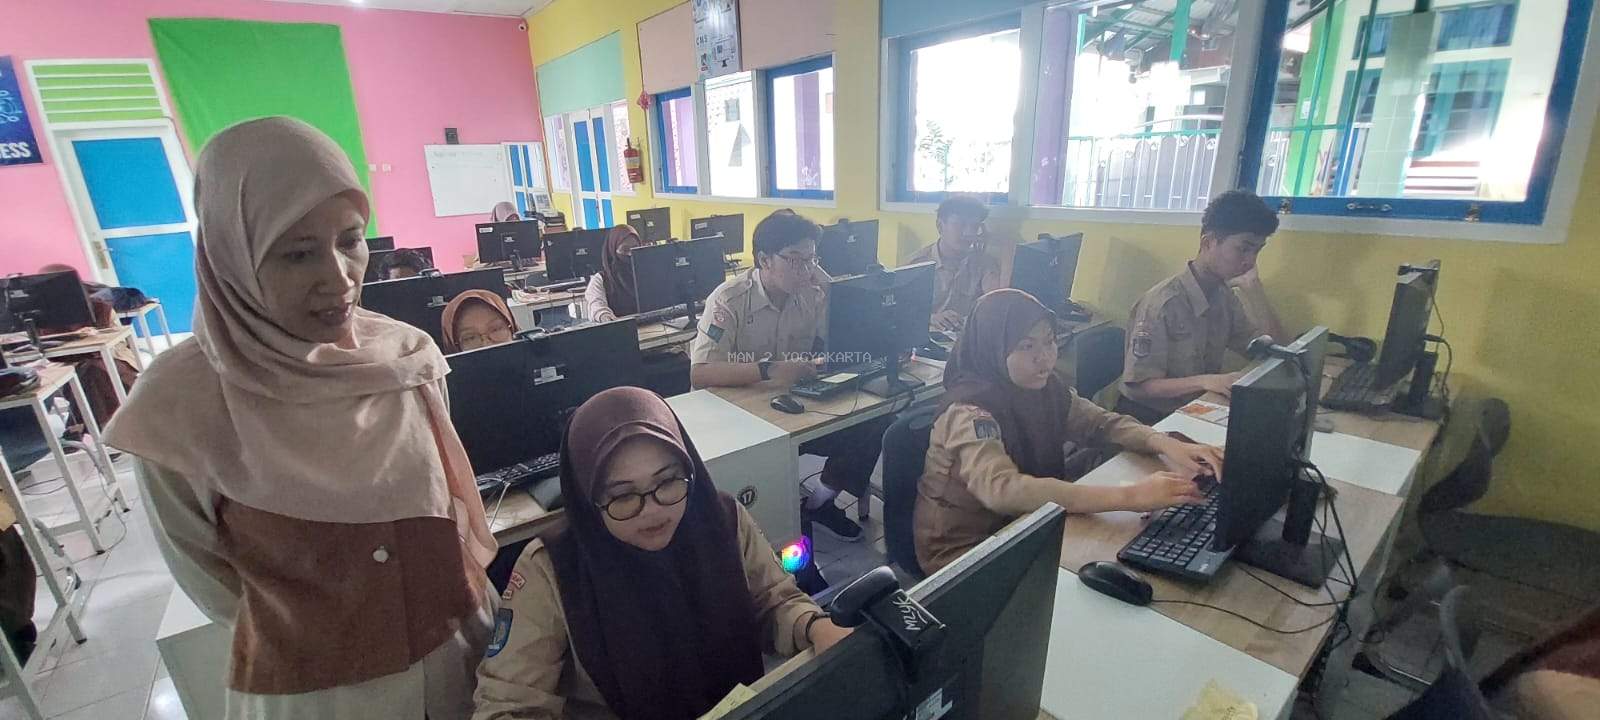 45 Siswa MAN 2 Yogyakarta Ikuti Uji Coba OSNK Kota Yogyakarta